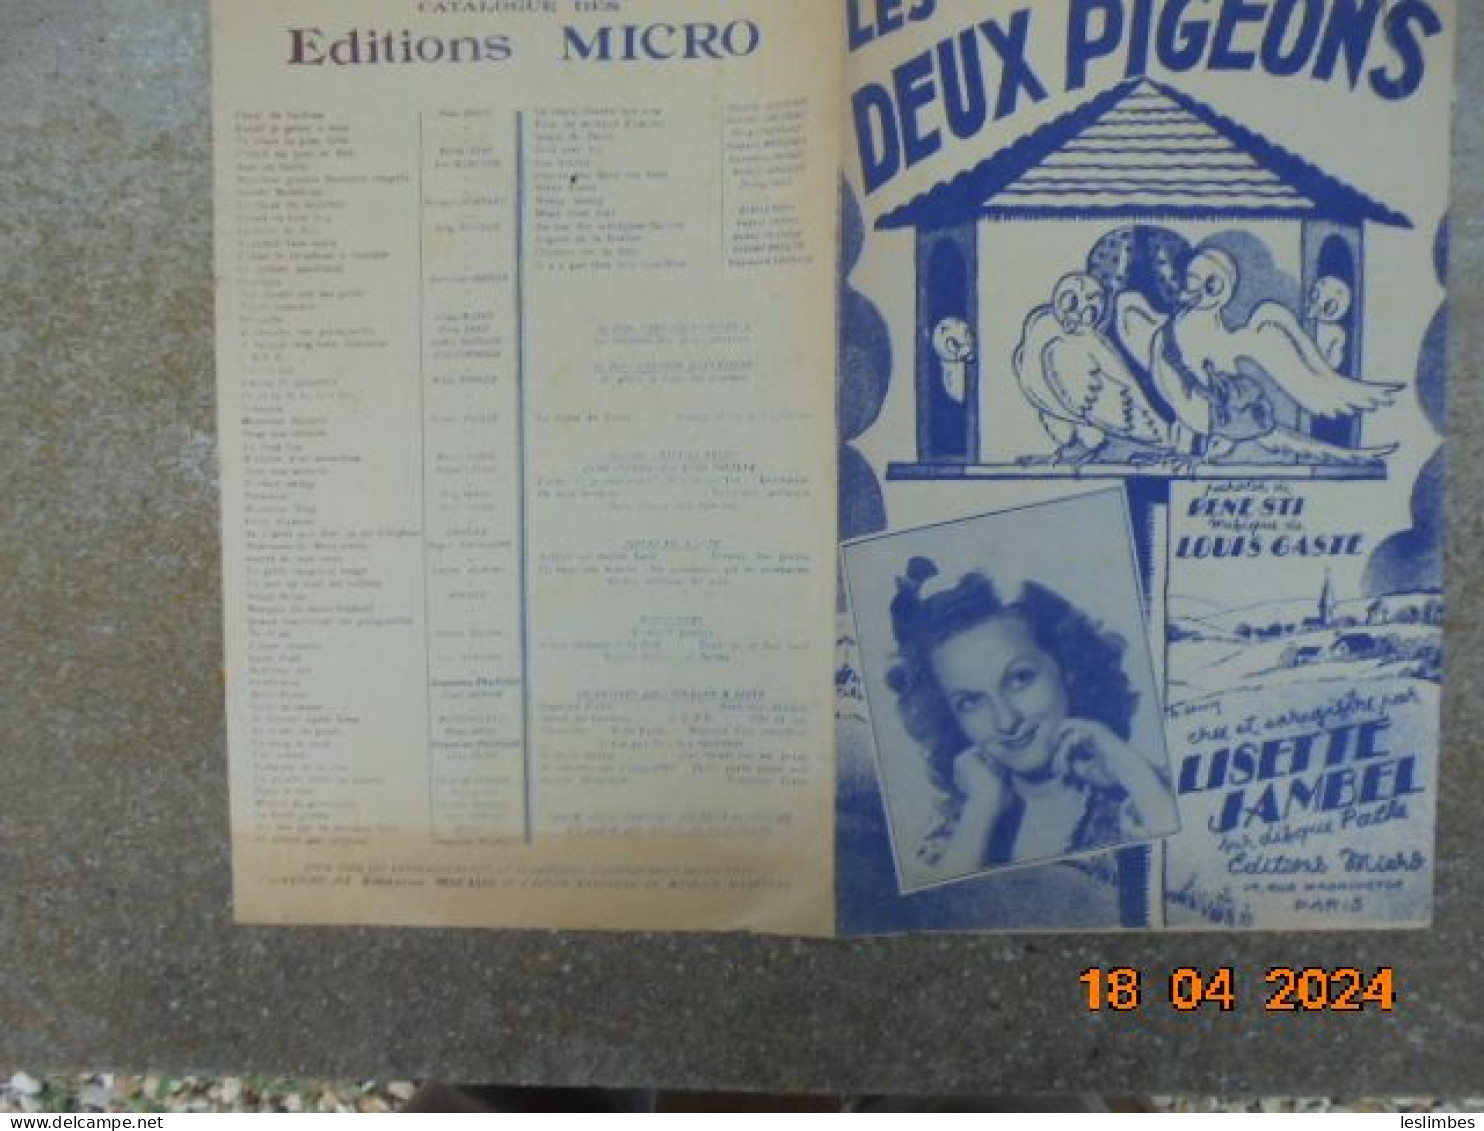 Les Deux Pigeons [partition] Fox-Trot - Rene Sti, Louis Gaste - Editions Micro 1948 - Partituras